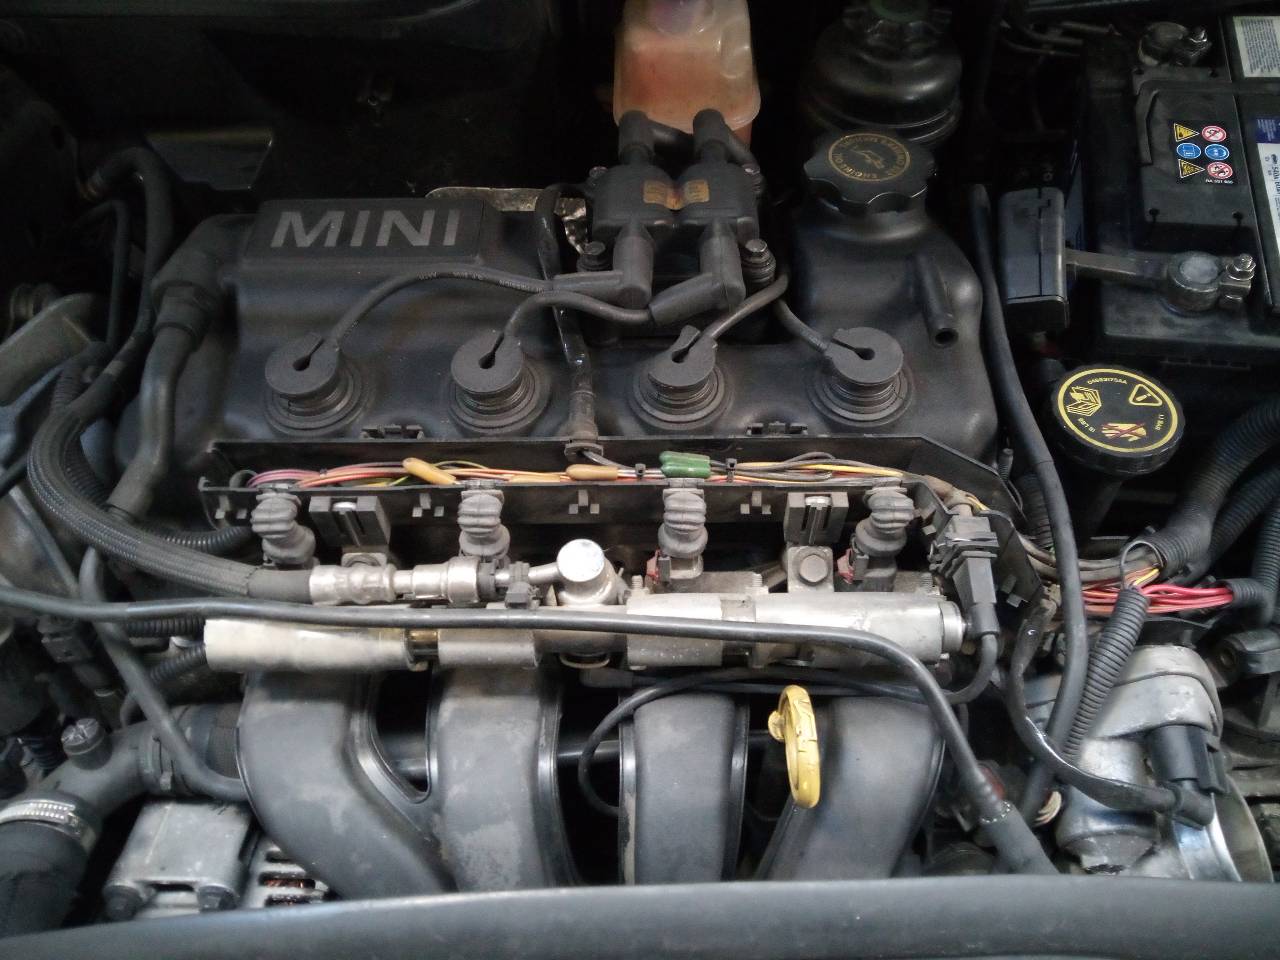 MINI Cabrio R52 (2004-2008) Other Control Units 6763770 24101091